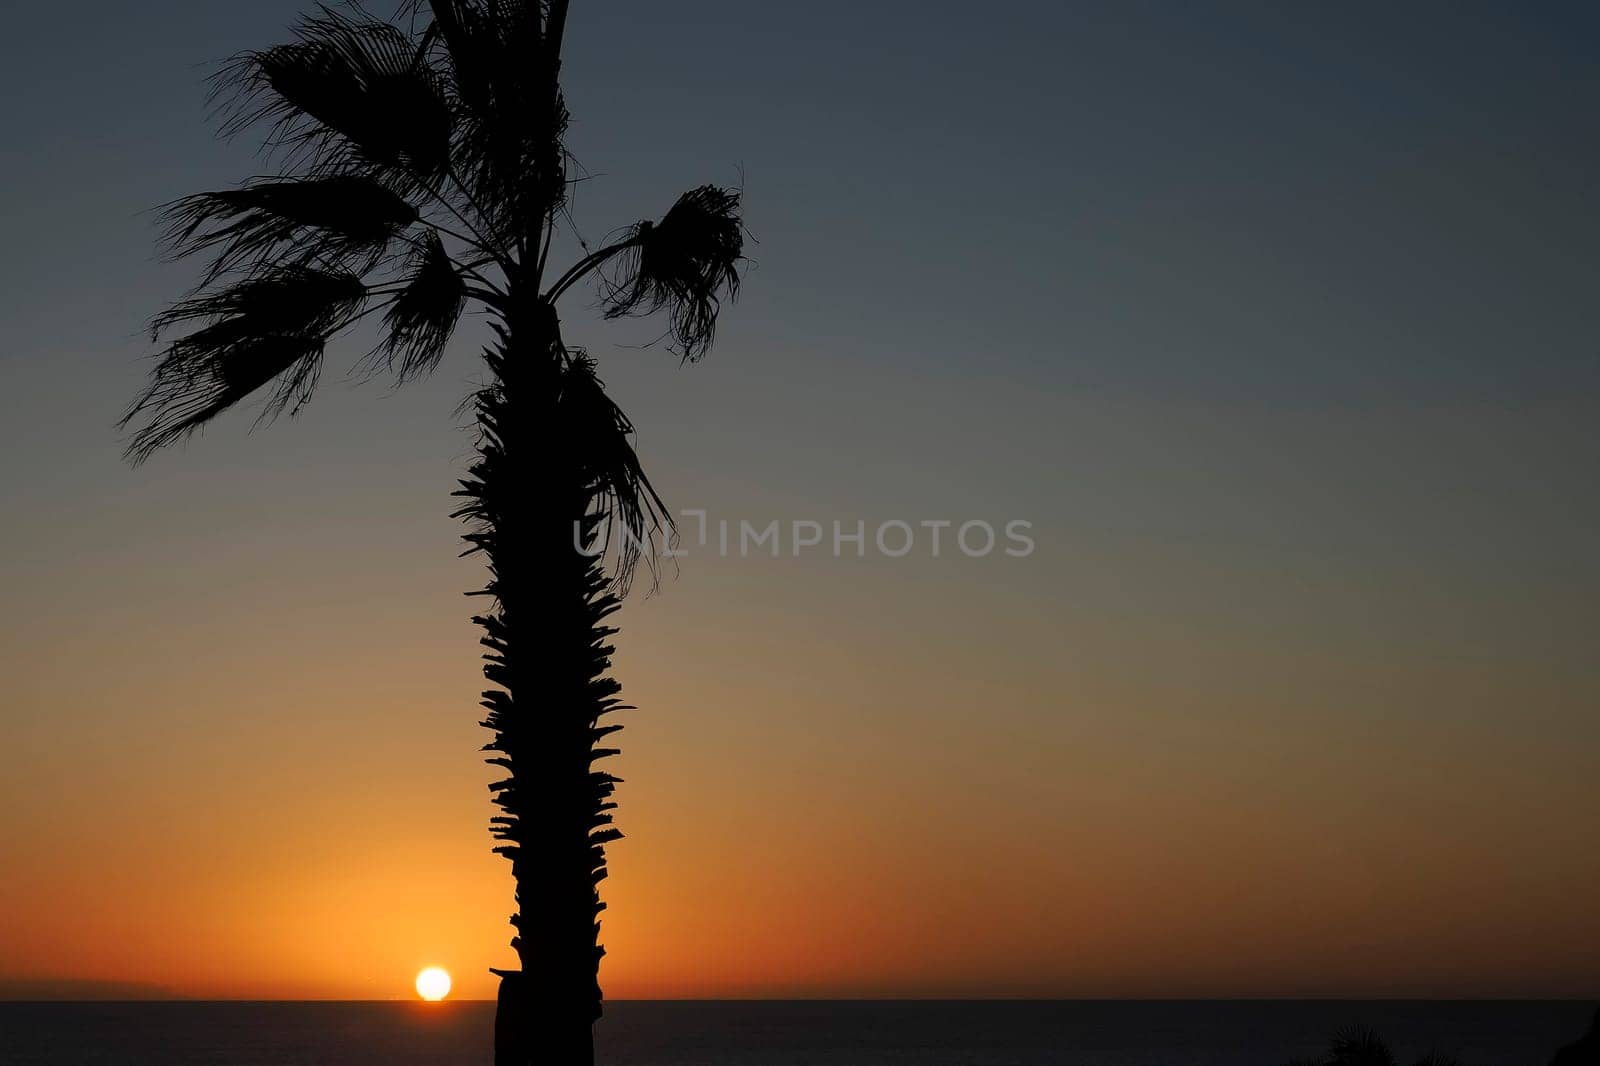 A Wonderful golden sunset over Pacific Ocean in todos santos mexico baja california sur